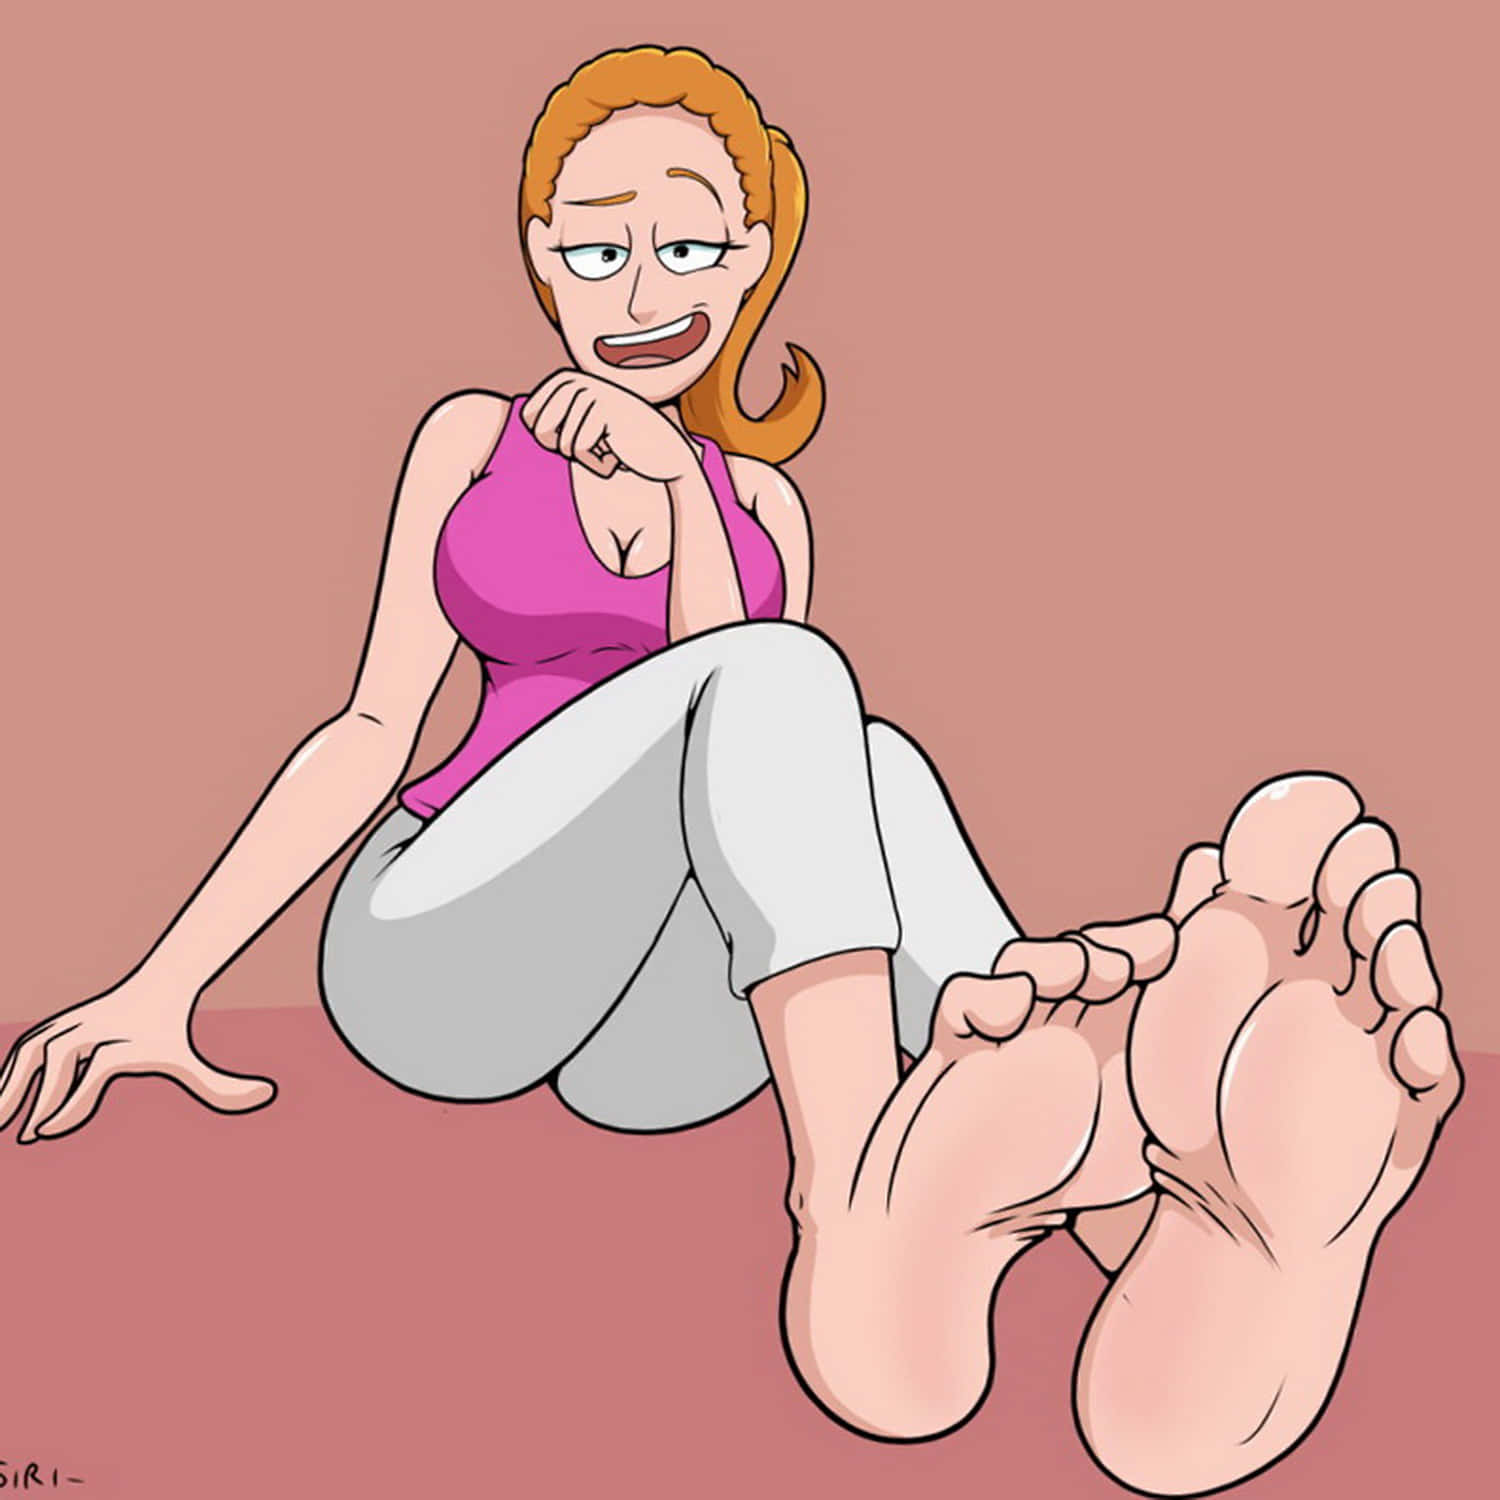 Cartoon foot fetish porn